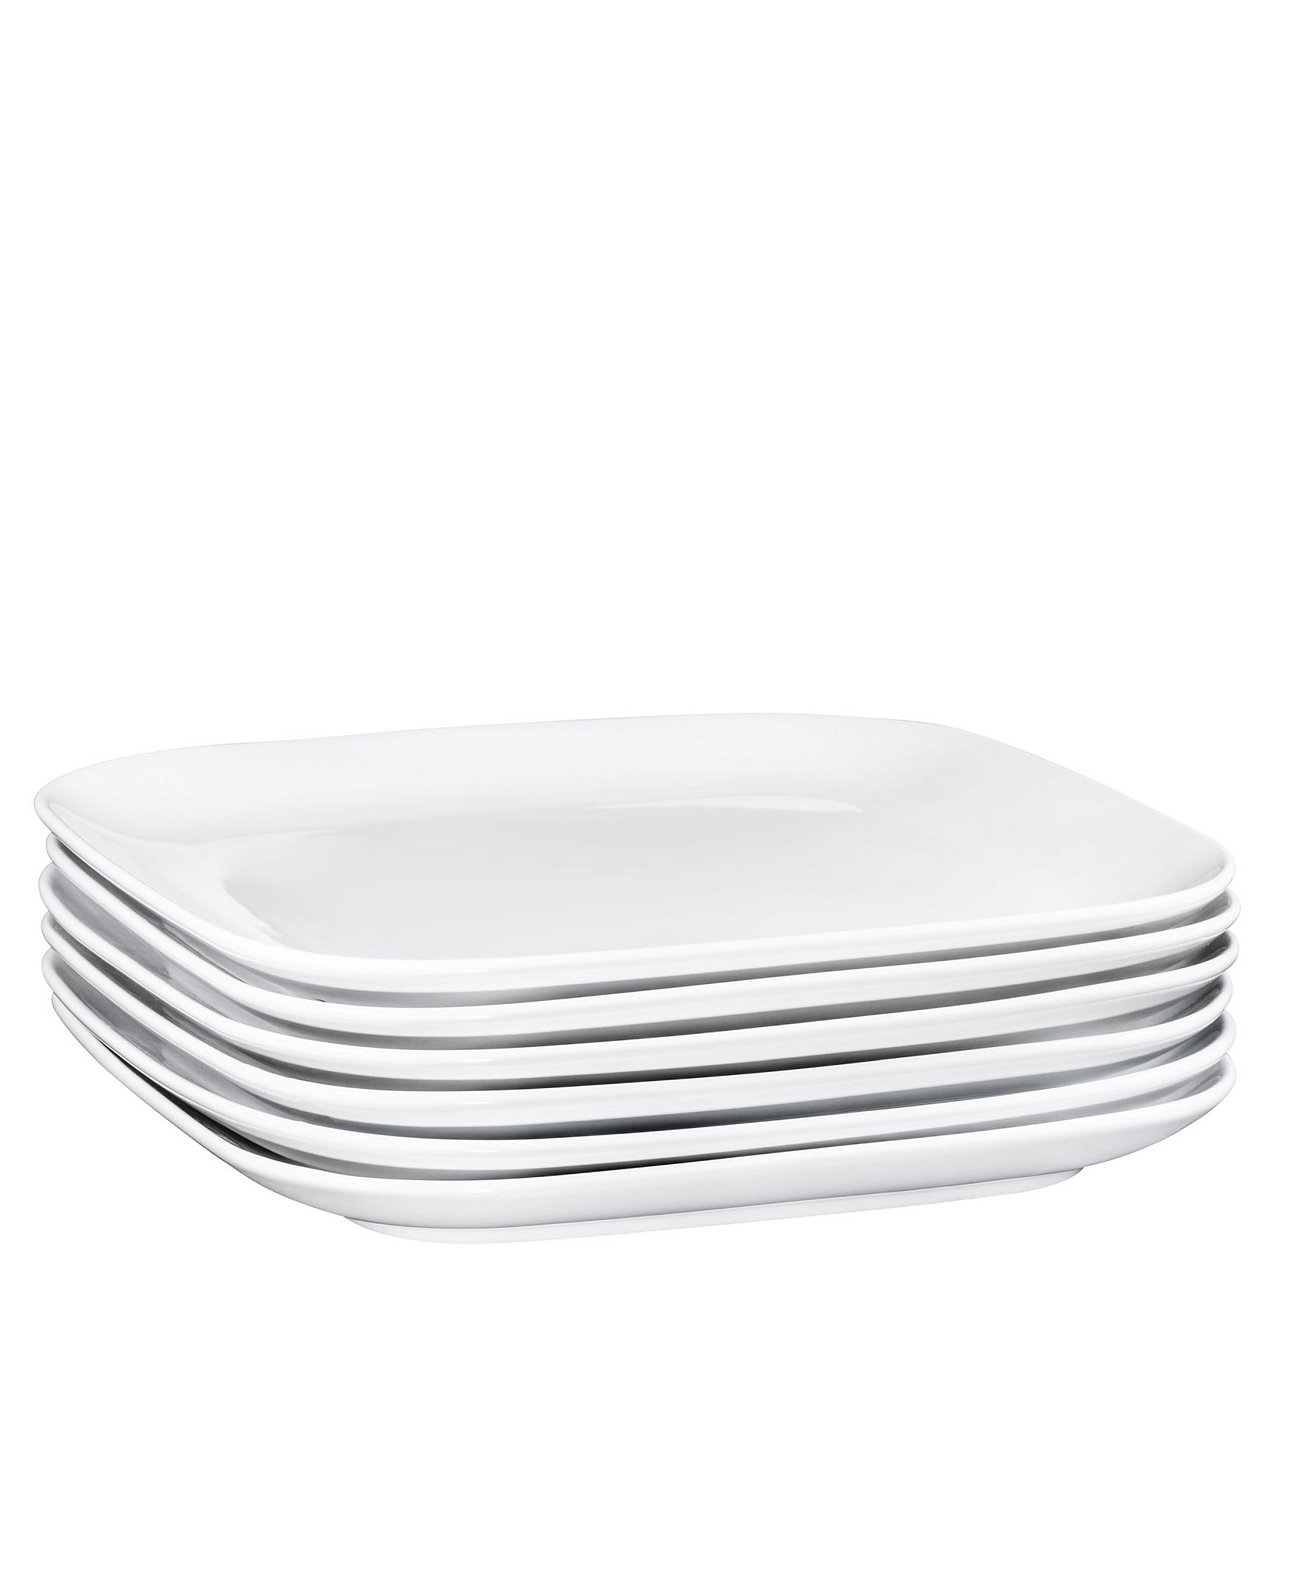 Квадратные обеденные тарелки, Обеденные блюда, набор из 6 Bruntmor